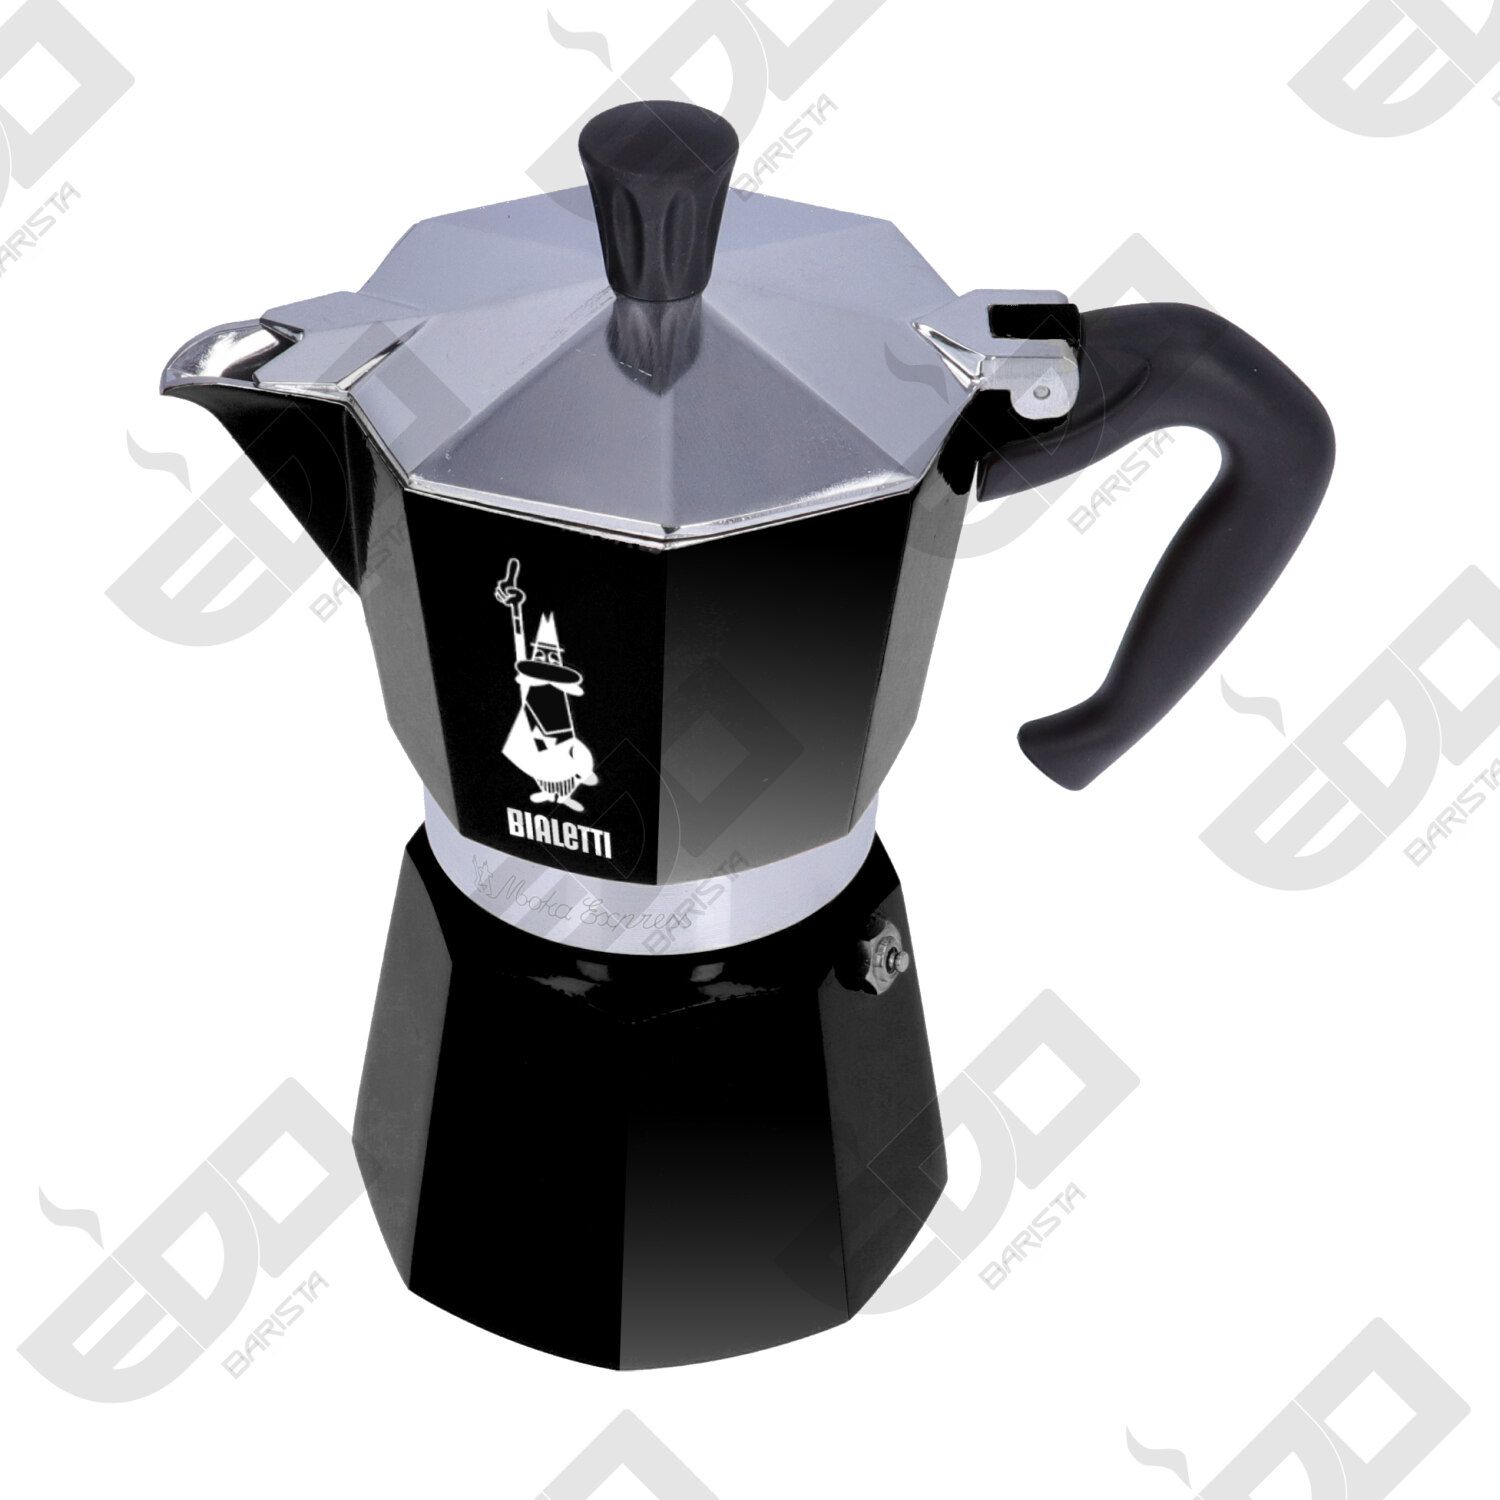 Bialetti moka coffee 6 cups: buy it online now